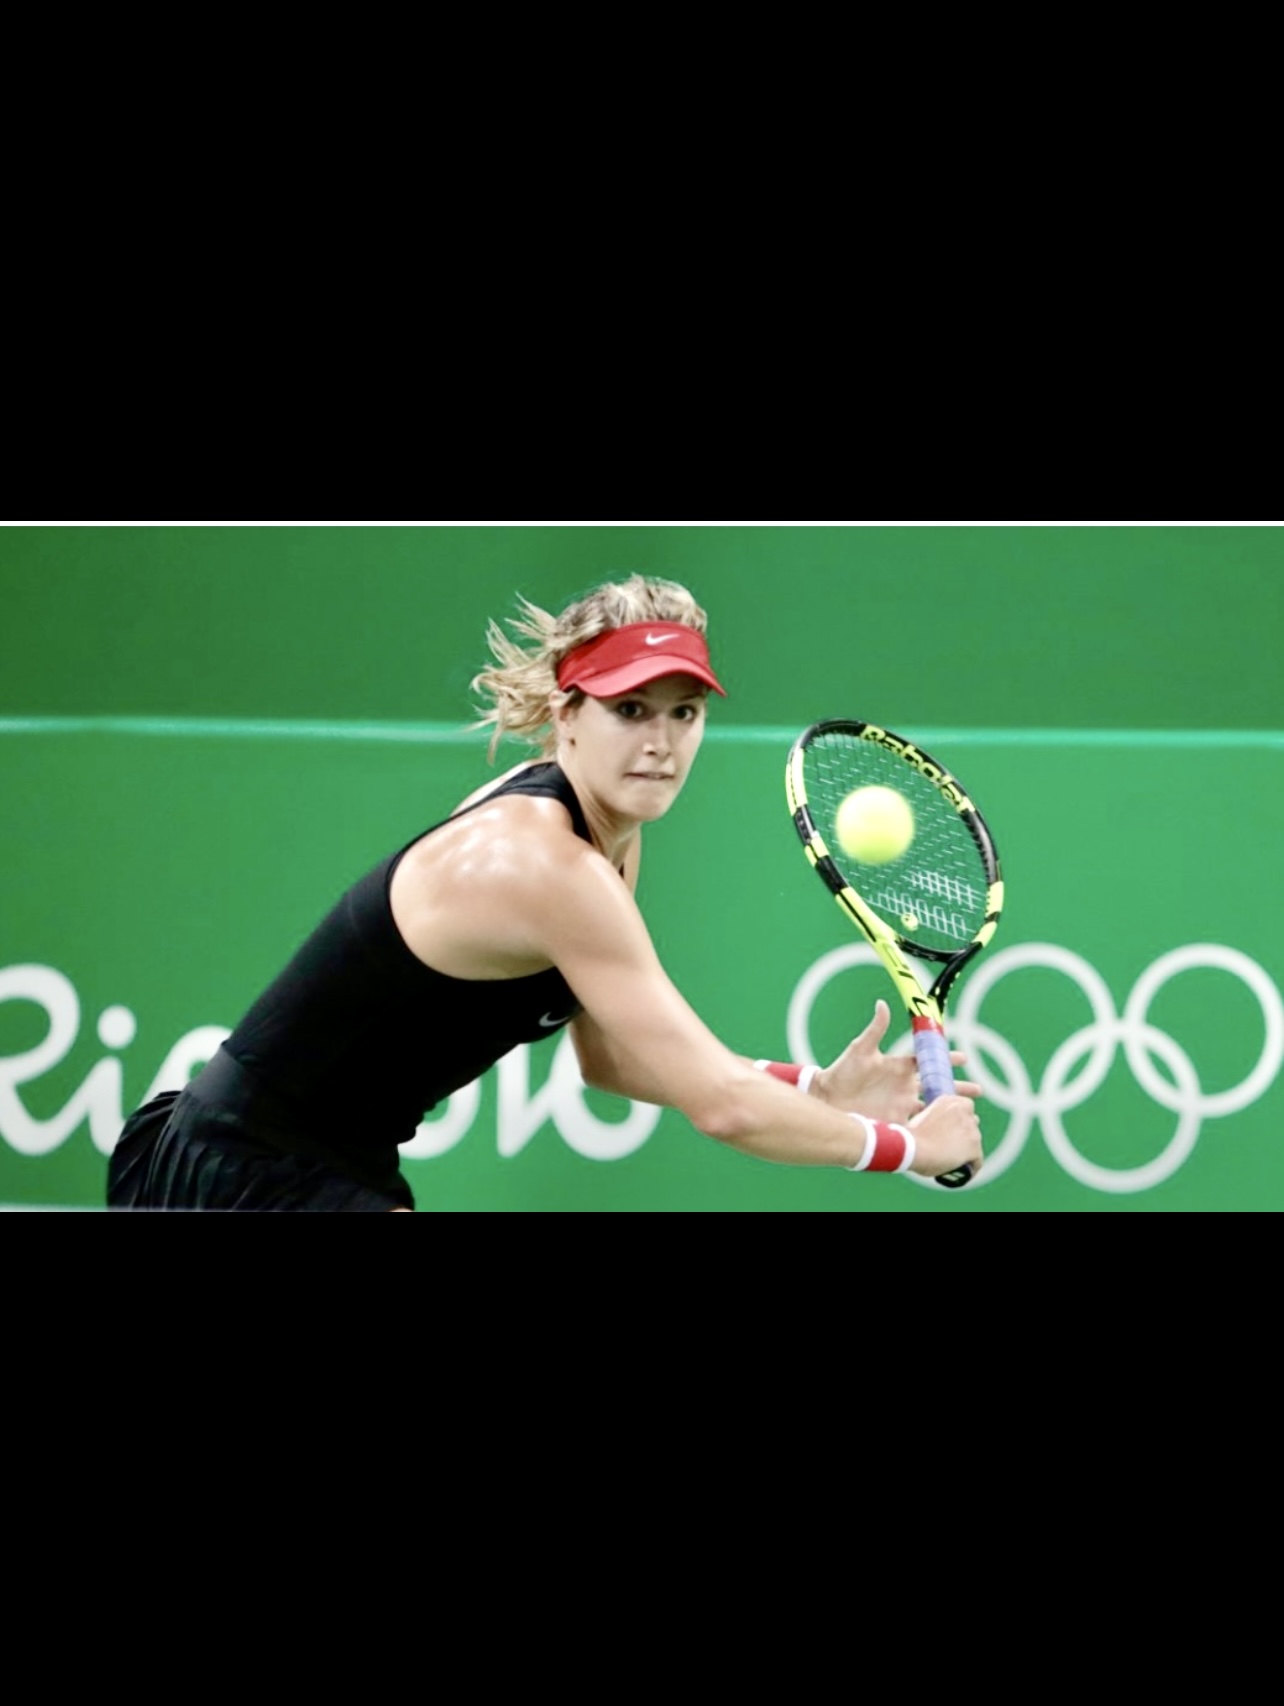 Eugénie Bouchard, une joueuse de tennis, balance gracieusement sa raquette sur une balle, créant une impressionnante démonstration d'habileté et de précision.